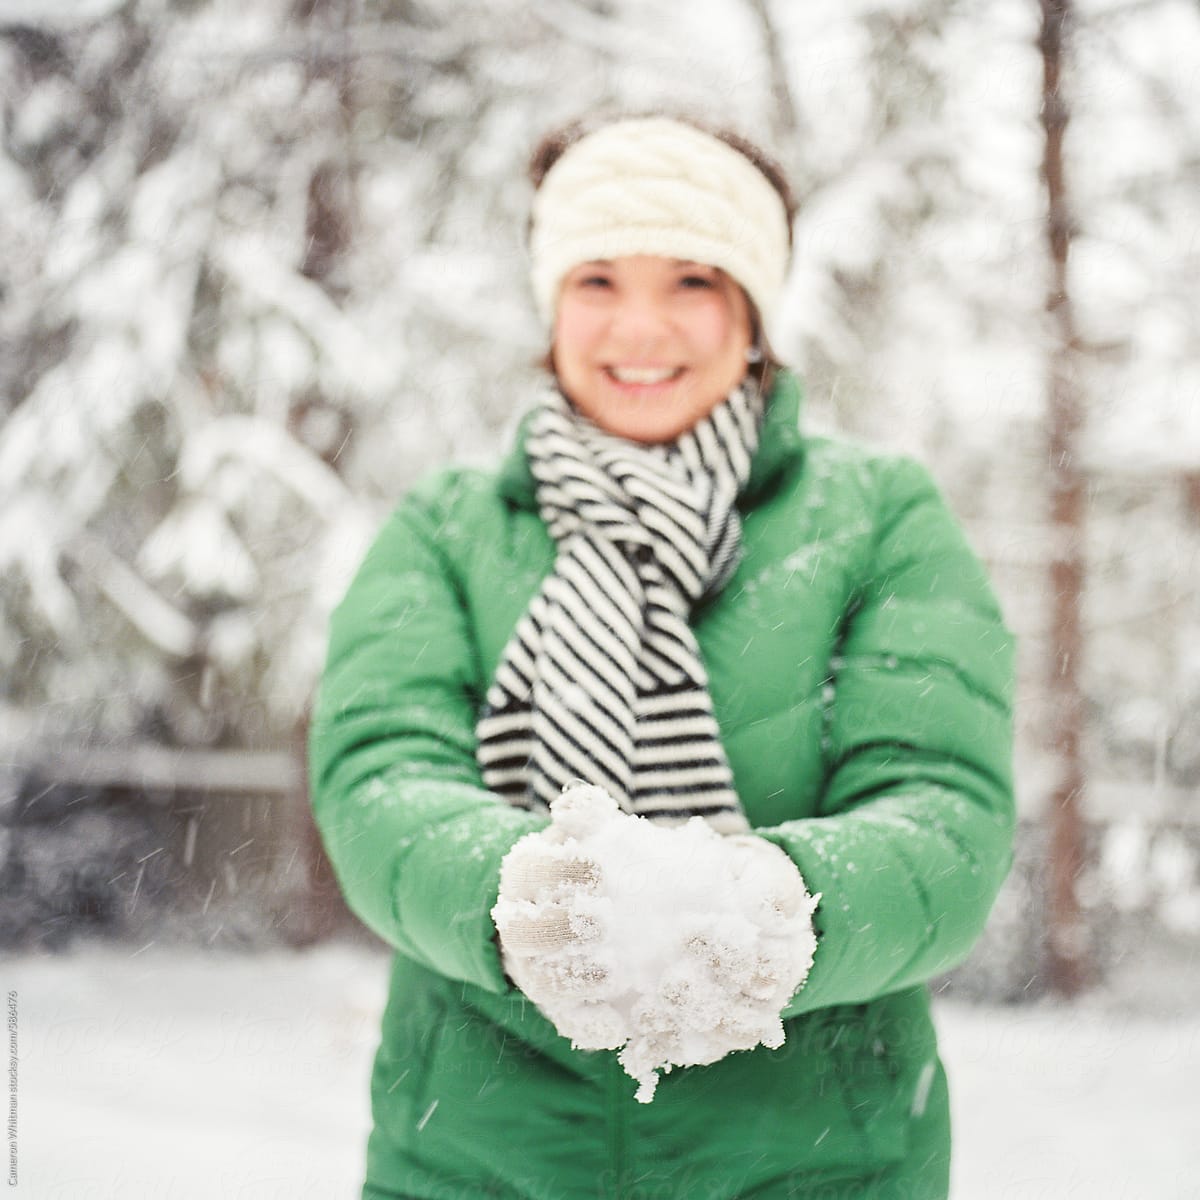 Snow Portraits By Stocksy Contributor CWP LLC Stocksy